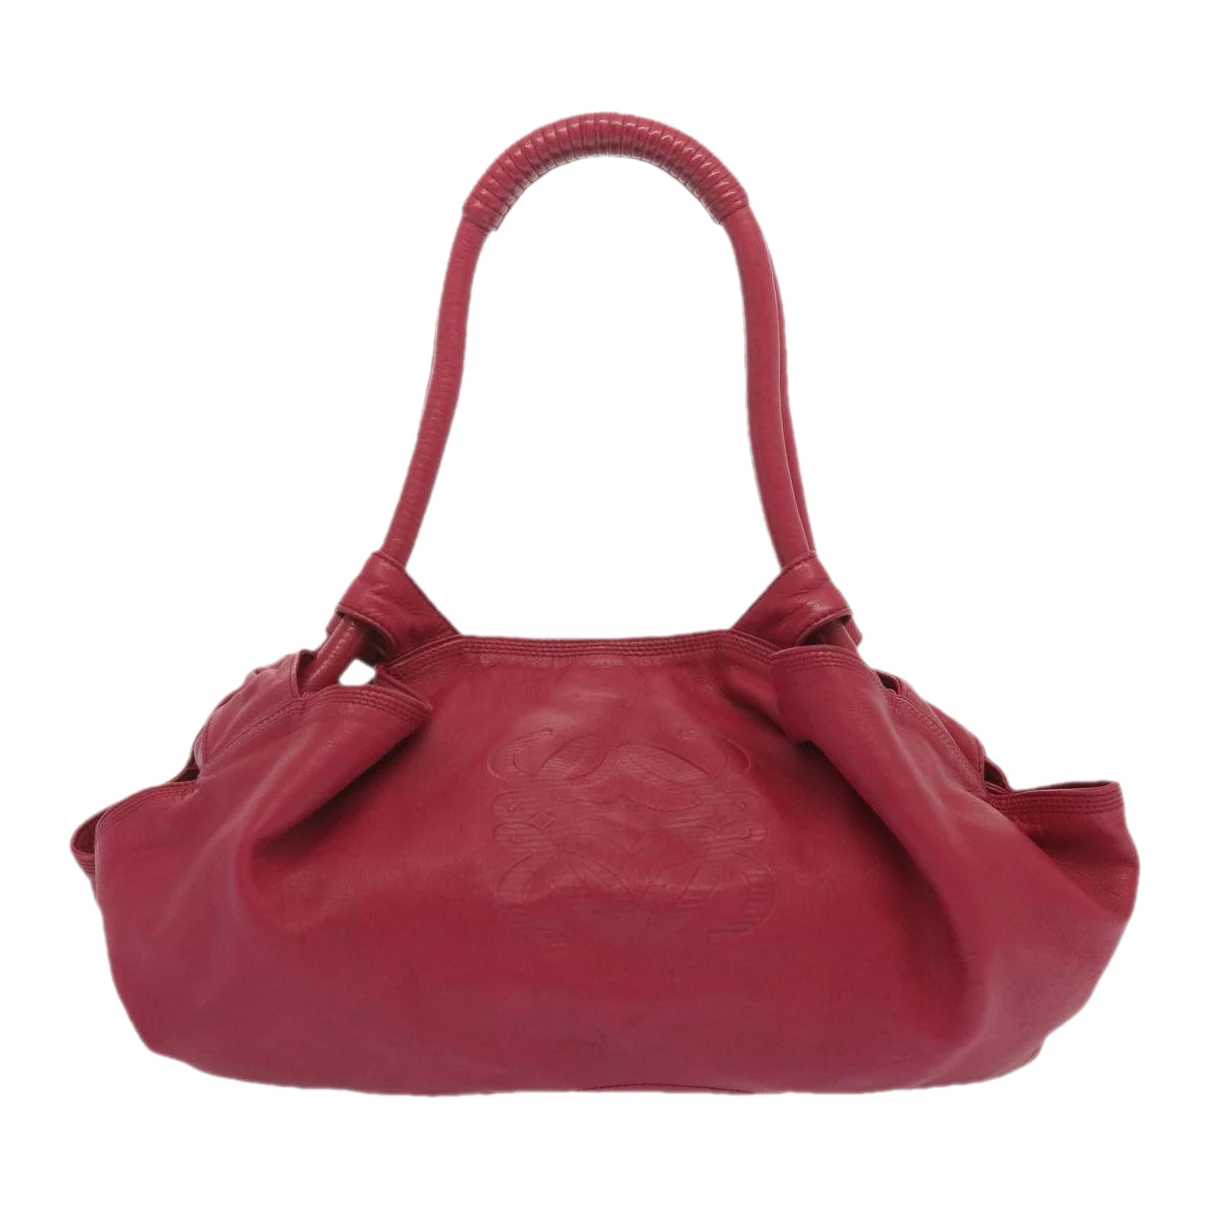 Pre-owned Loewe Leather Handbag In Pink